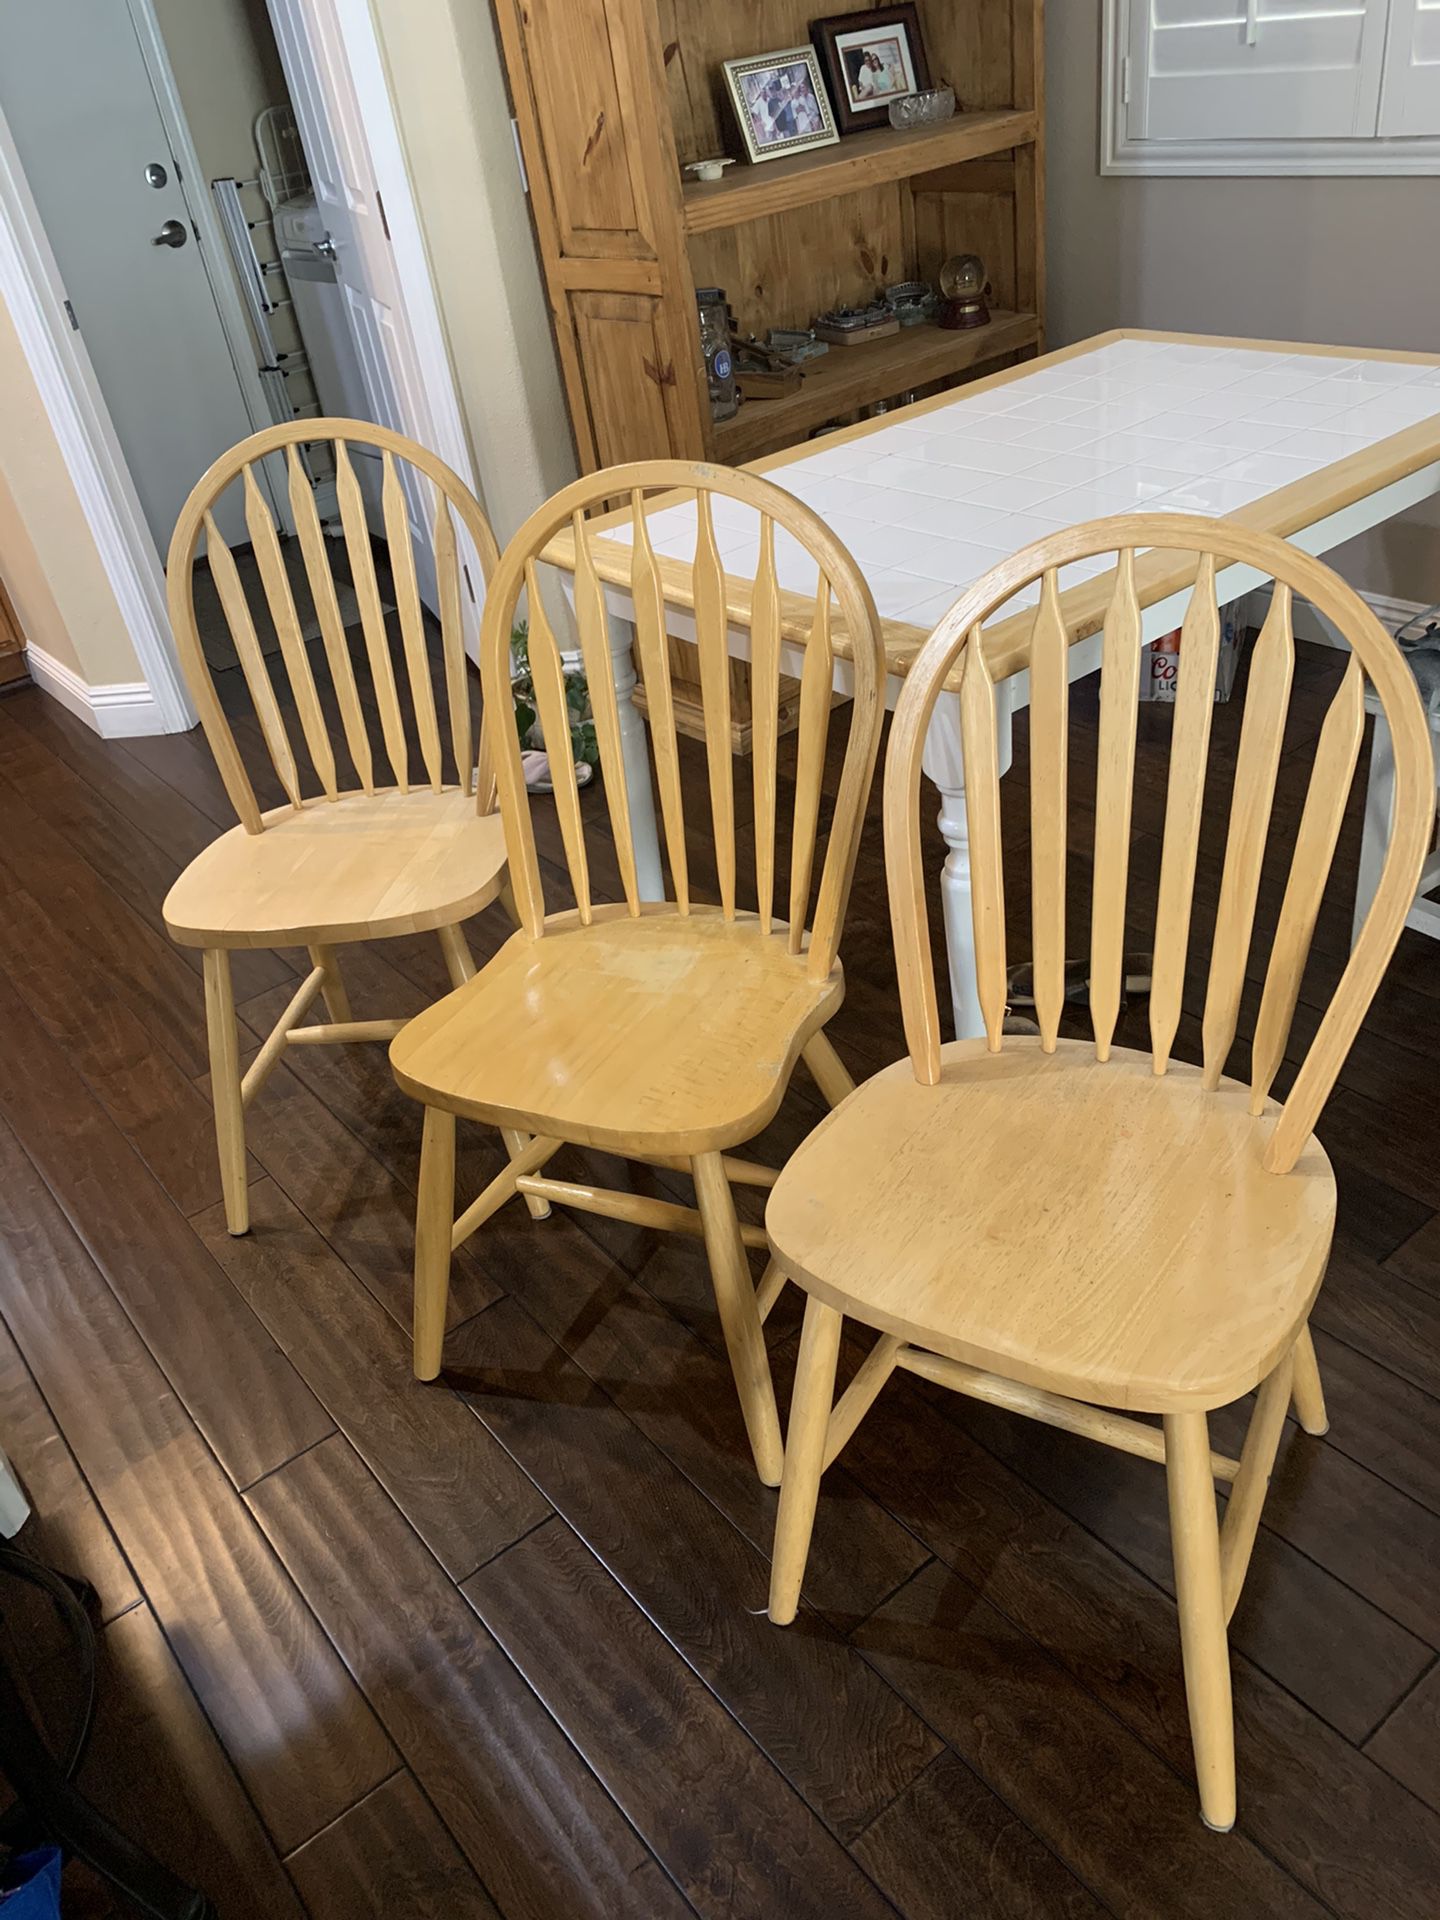 Farm House Chairs